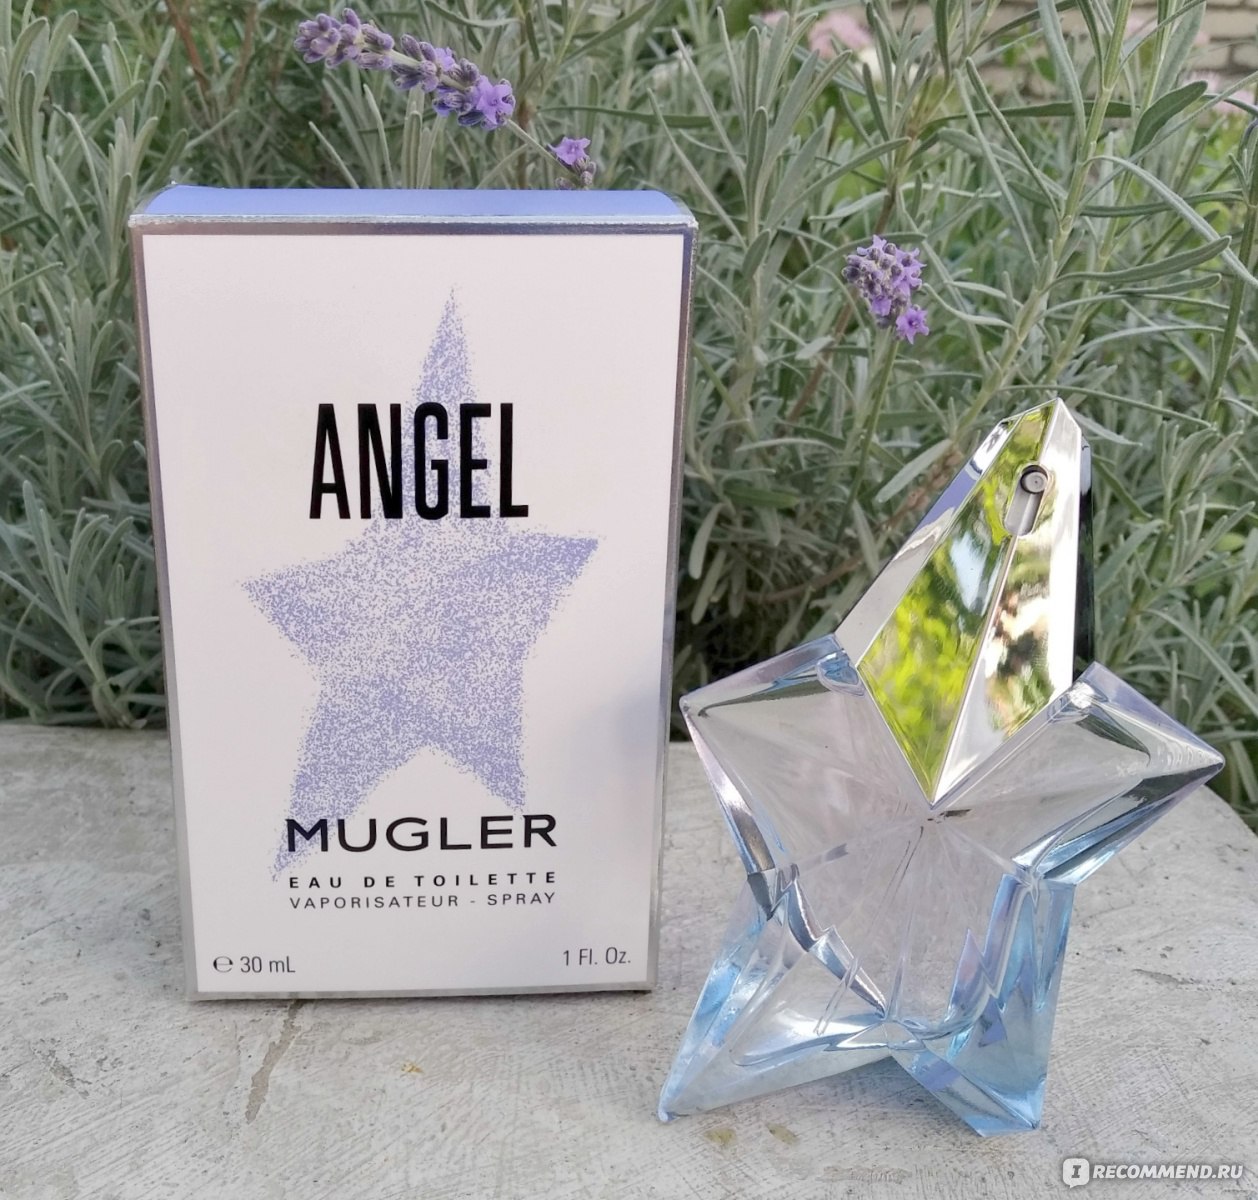 Thierry Mugler Angel eau de toilette 2019 г. фото